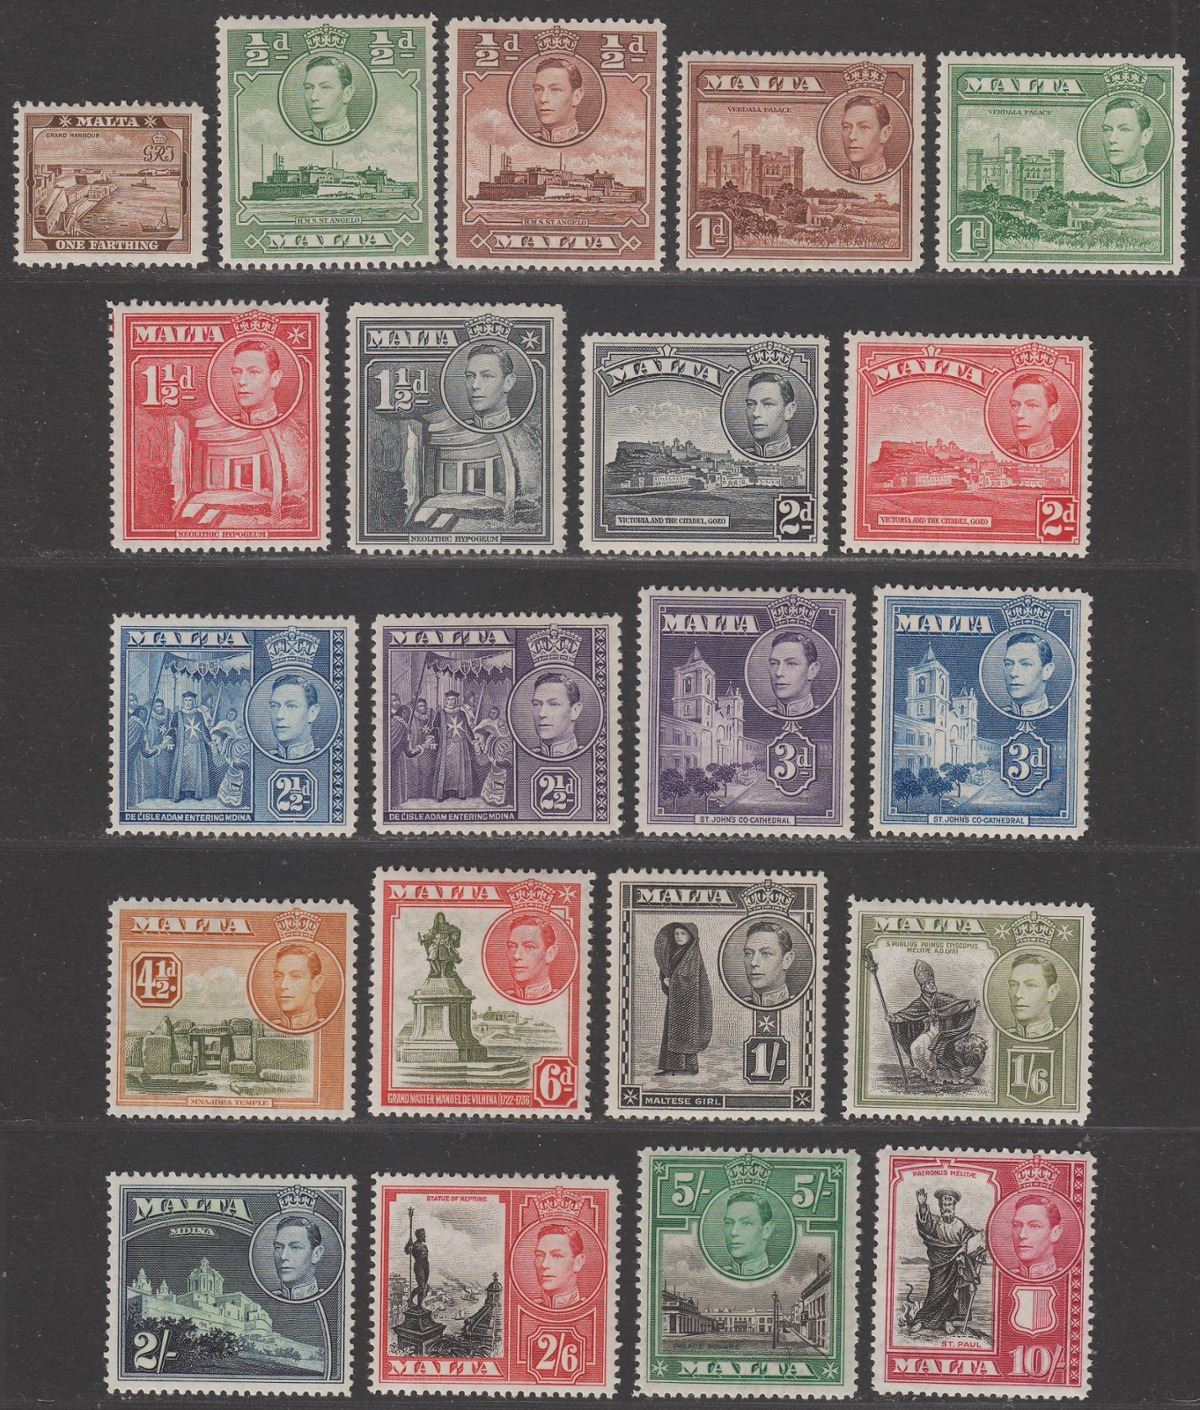 Malta 1938-43 King George VI Set Mint SG217-231 cat £75